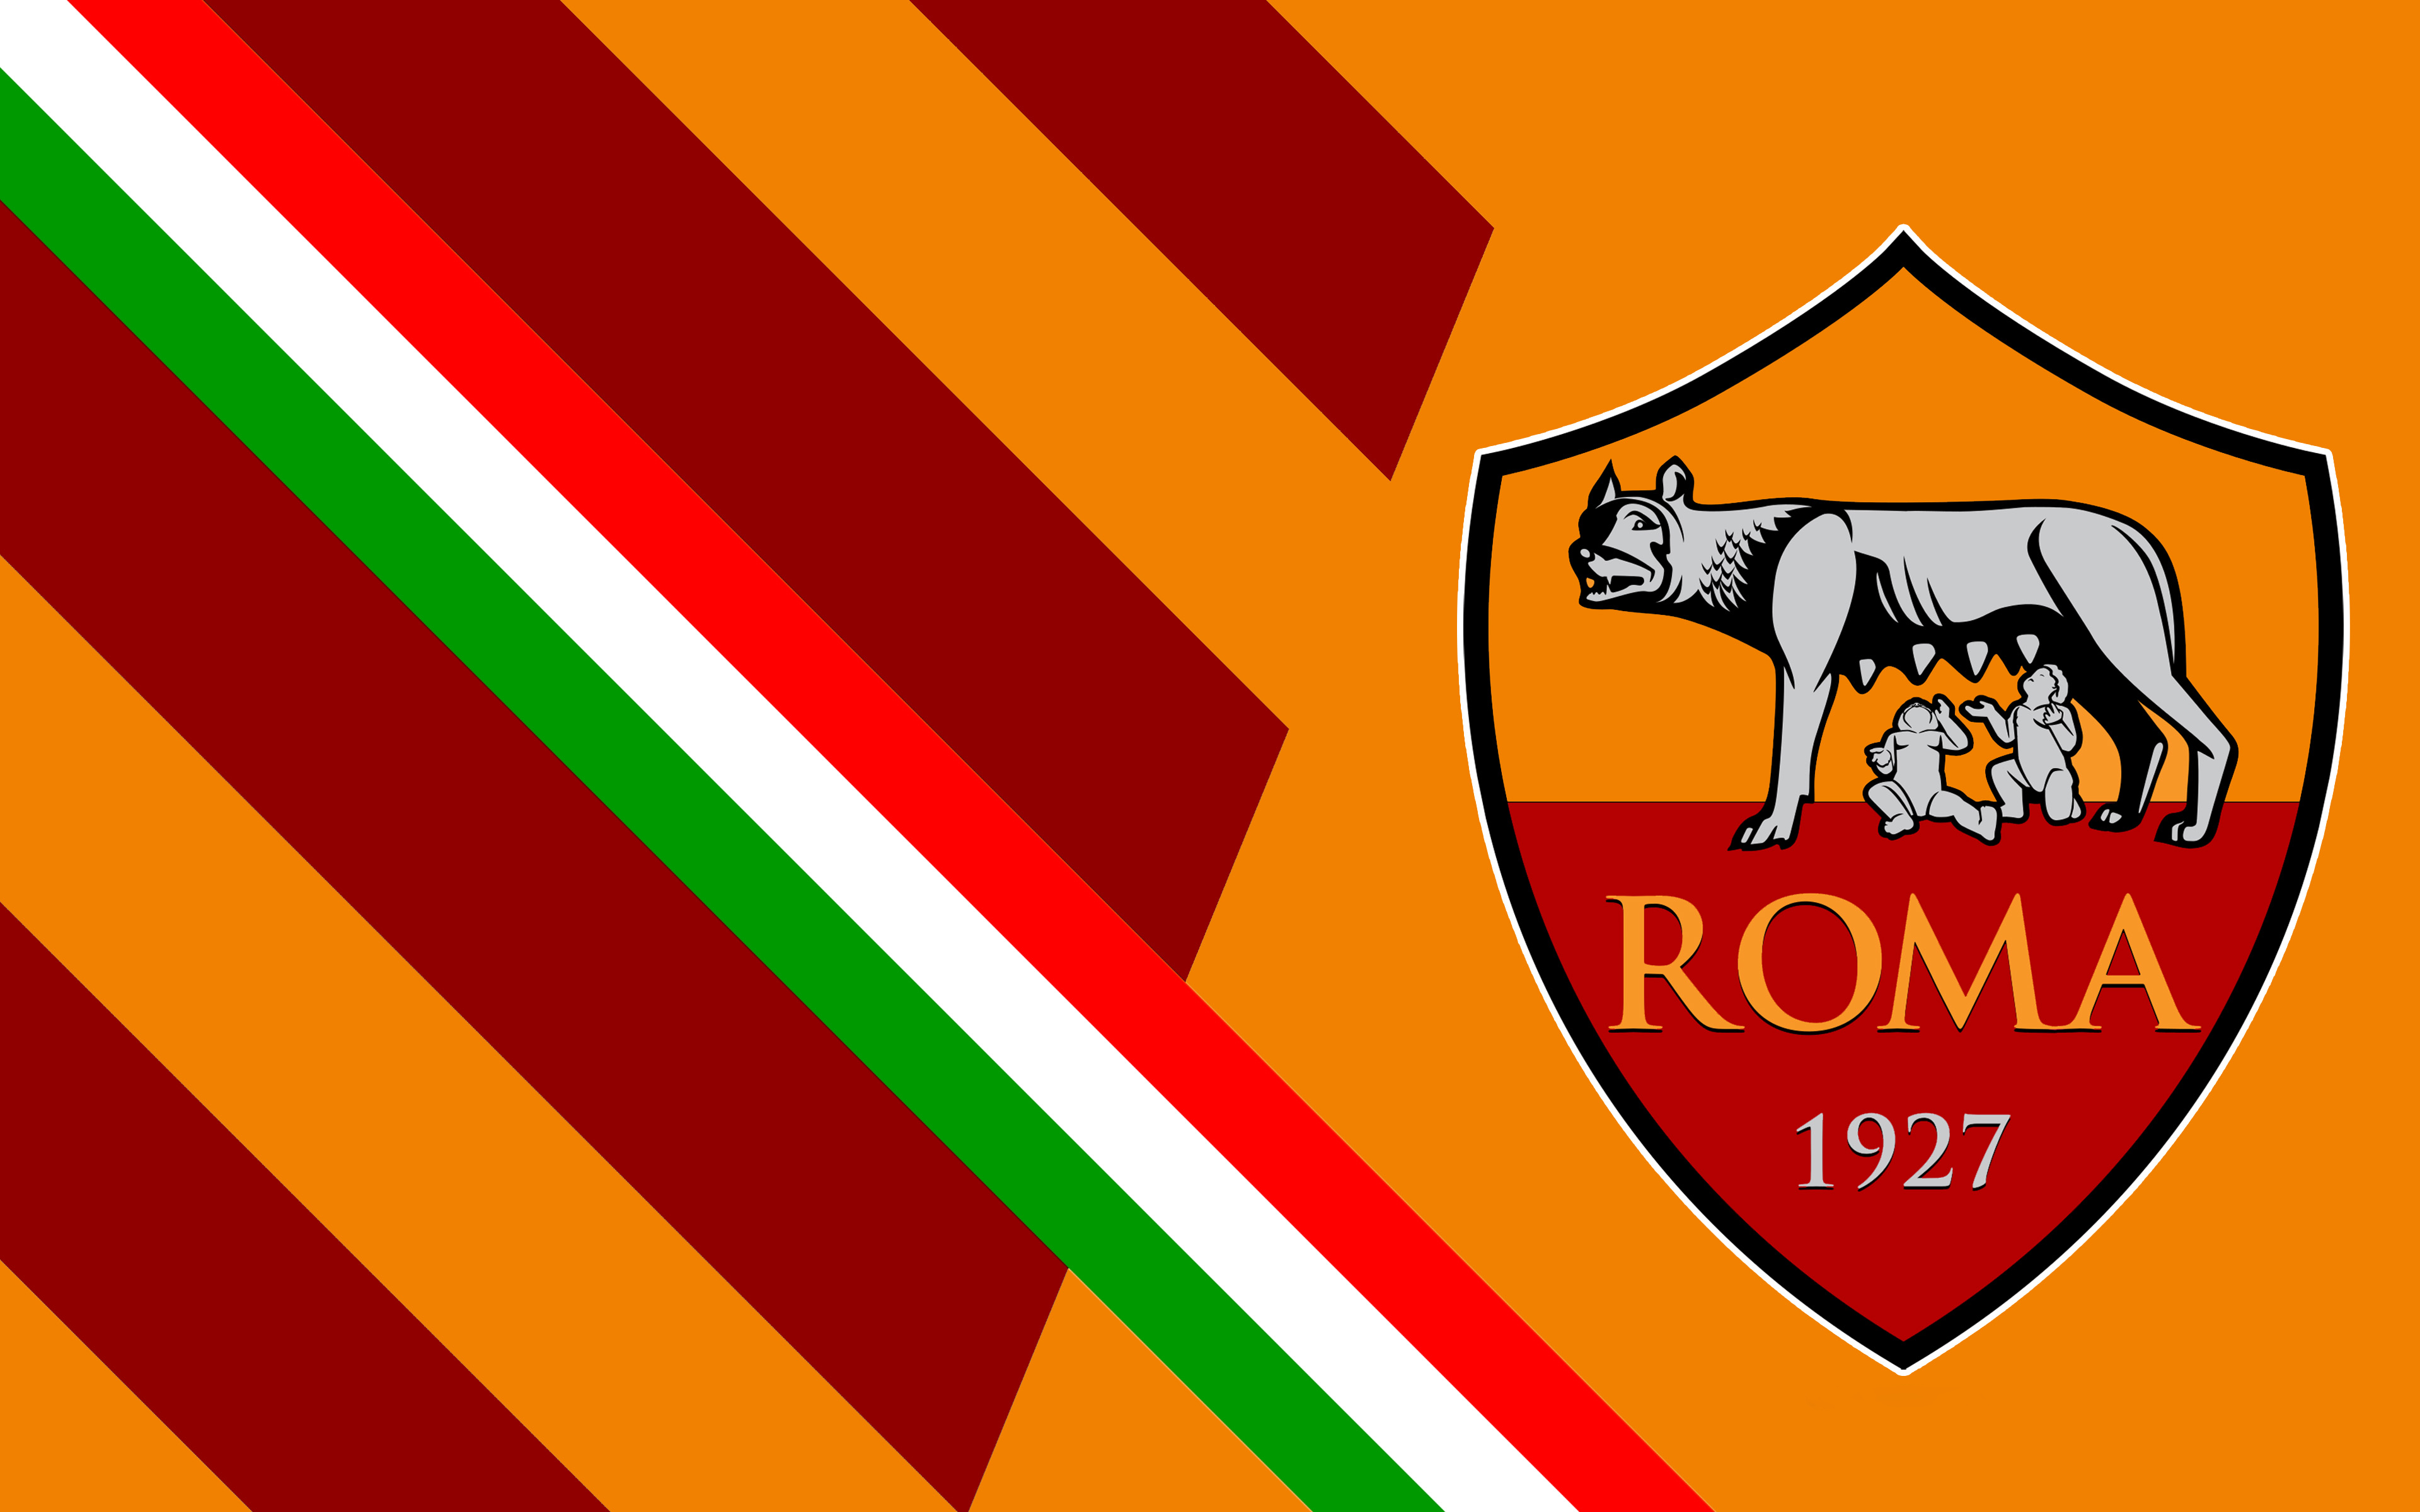 a s roma, sports, logo, soccer